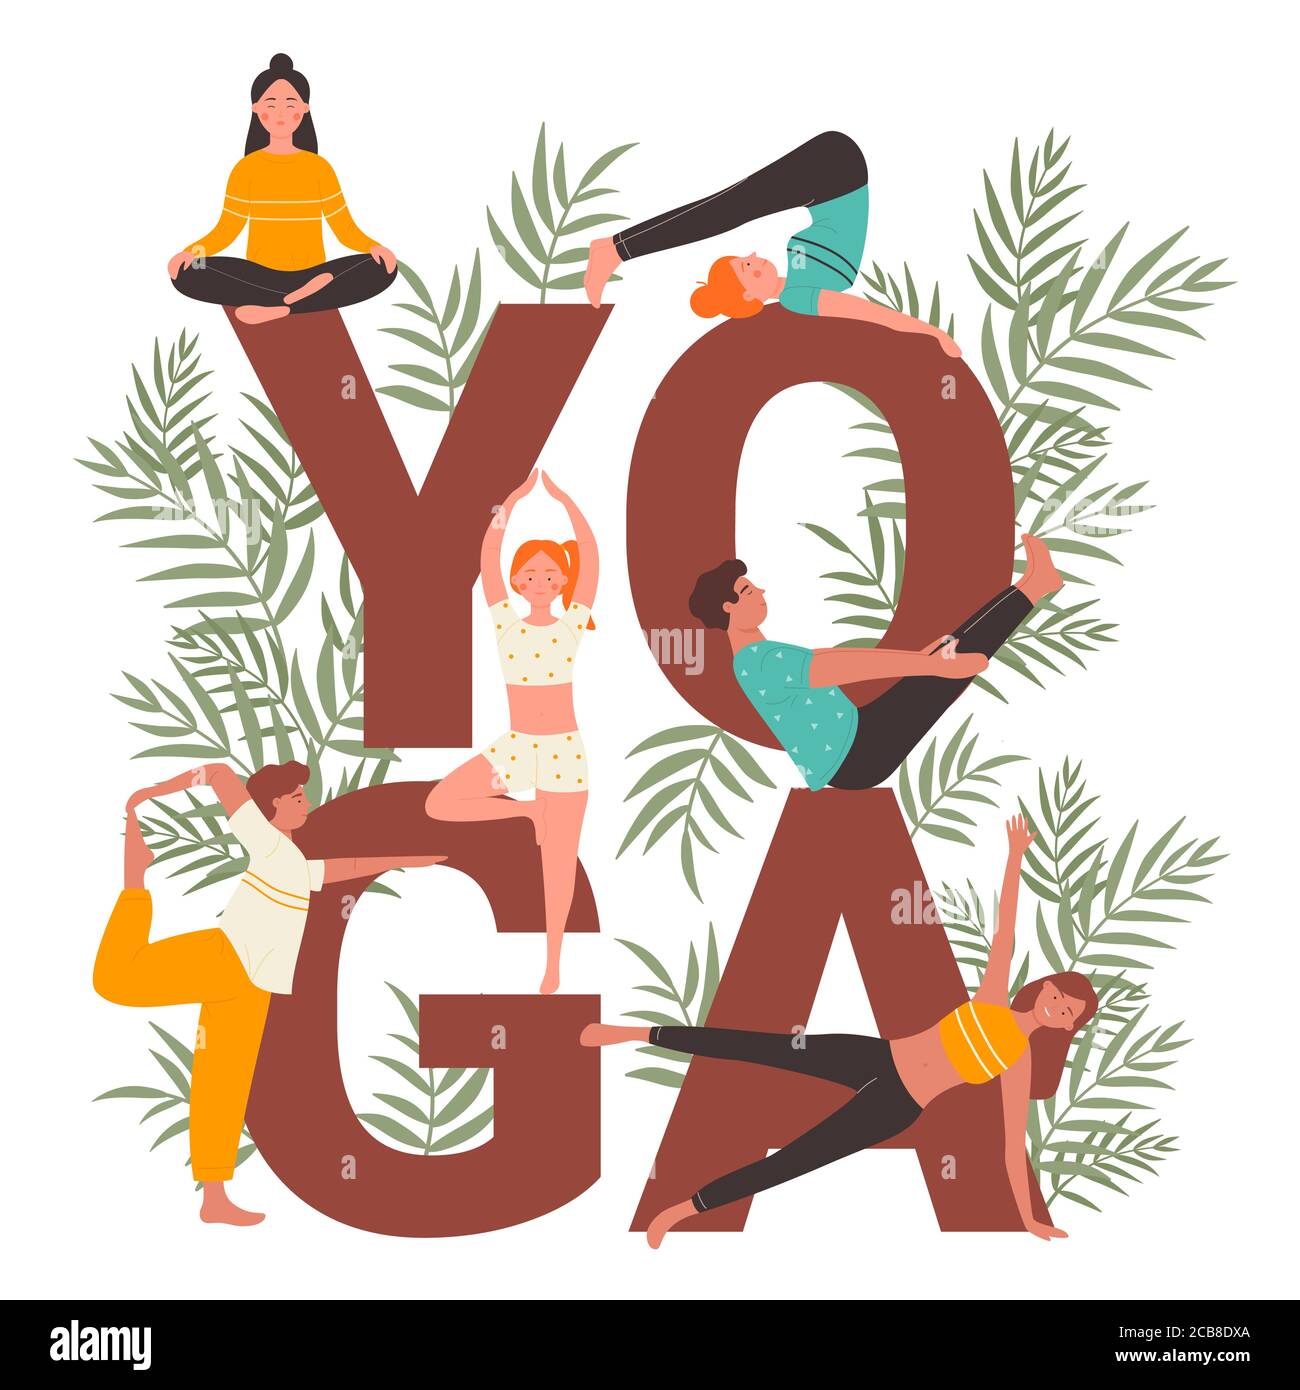 Yoga Praxis Vektor Illustration Set. Cartoon flache aktive Menschen praktizieren Yogi Asana, Stretching, tun ruhige Lotusmeditation neben großen Yoga-Wort. Gesunde Lebensweise Aktivität isoliert auf weiß Stock Vektor